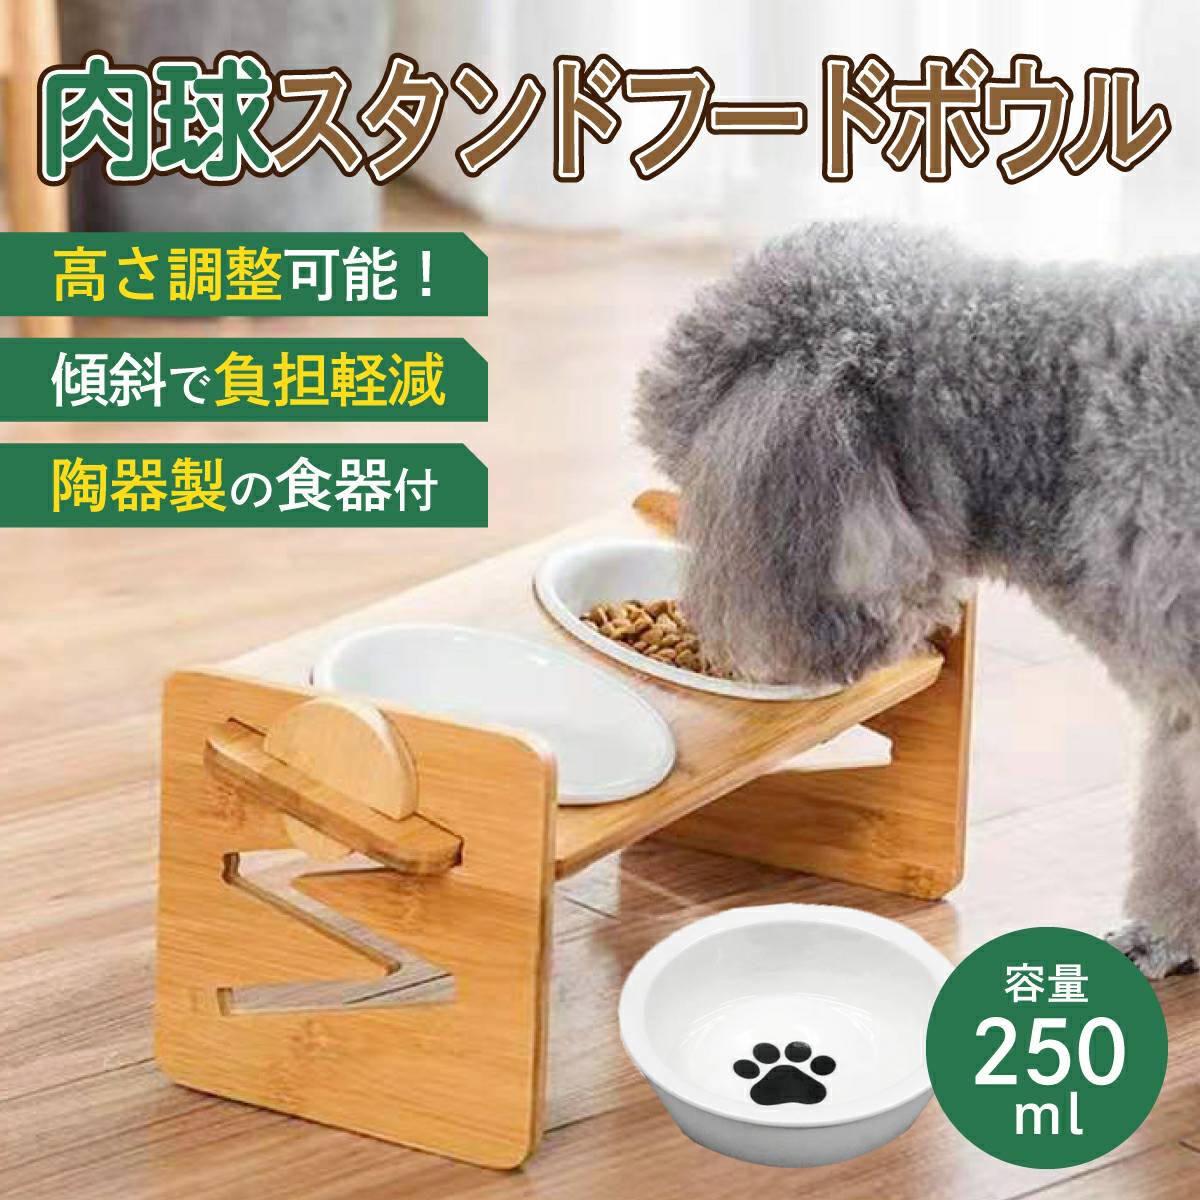  домашнее животное столик для мисок керамика подставка капот миска собака кошка двойной высота настройка возможность домашнее животное посуда . тарелка модный приманка корм шт. вода inserting 